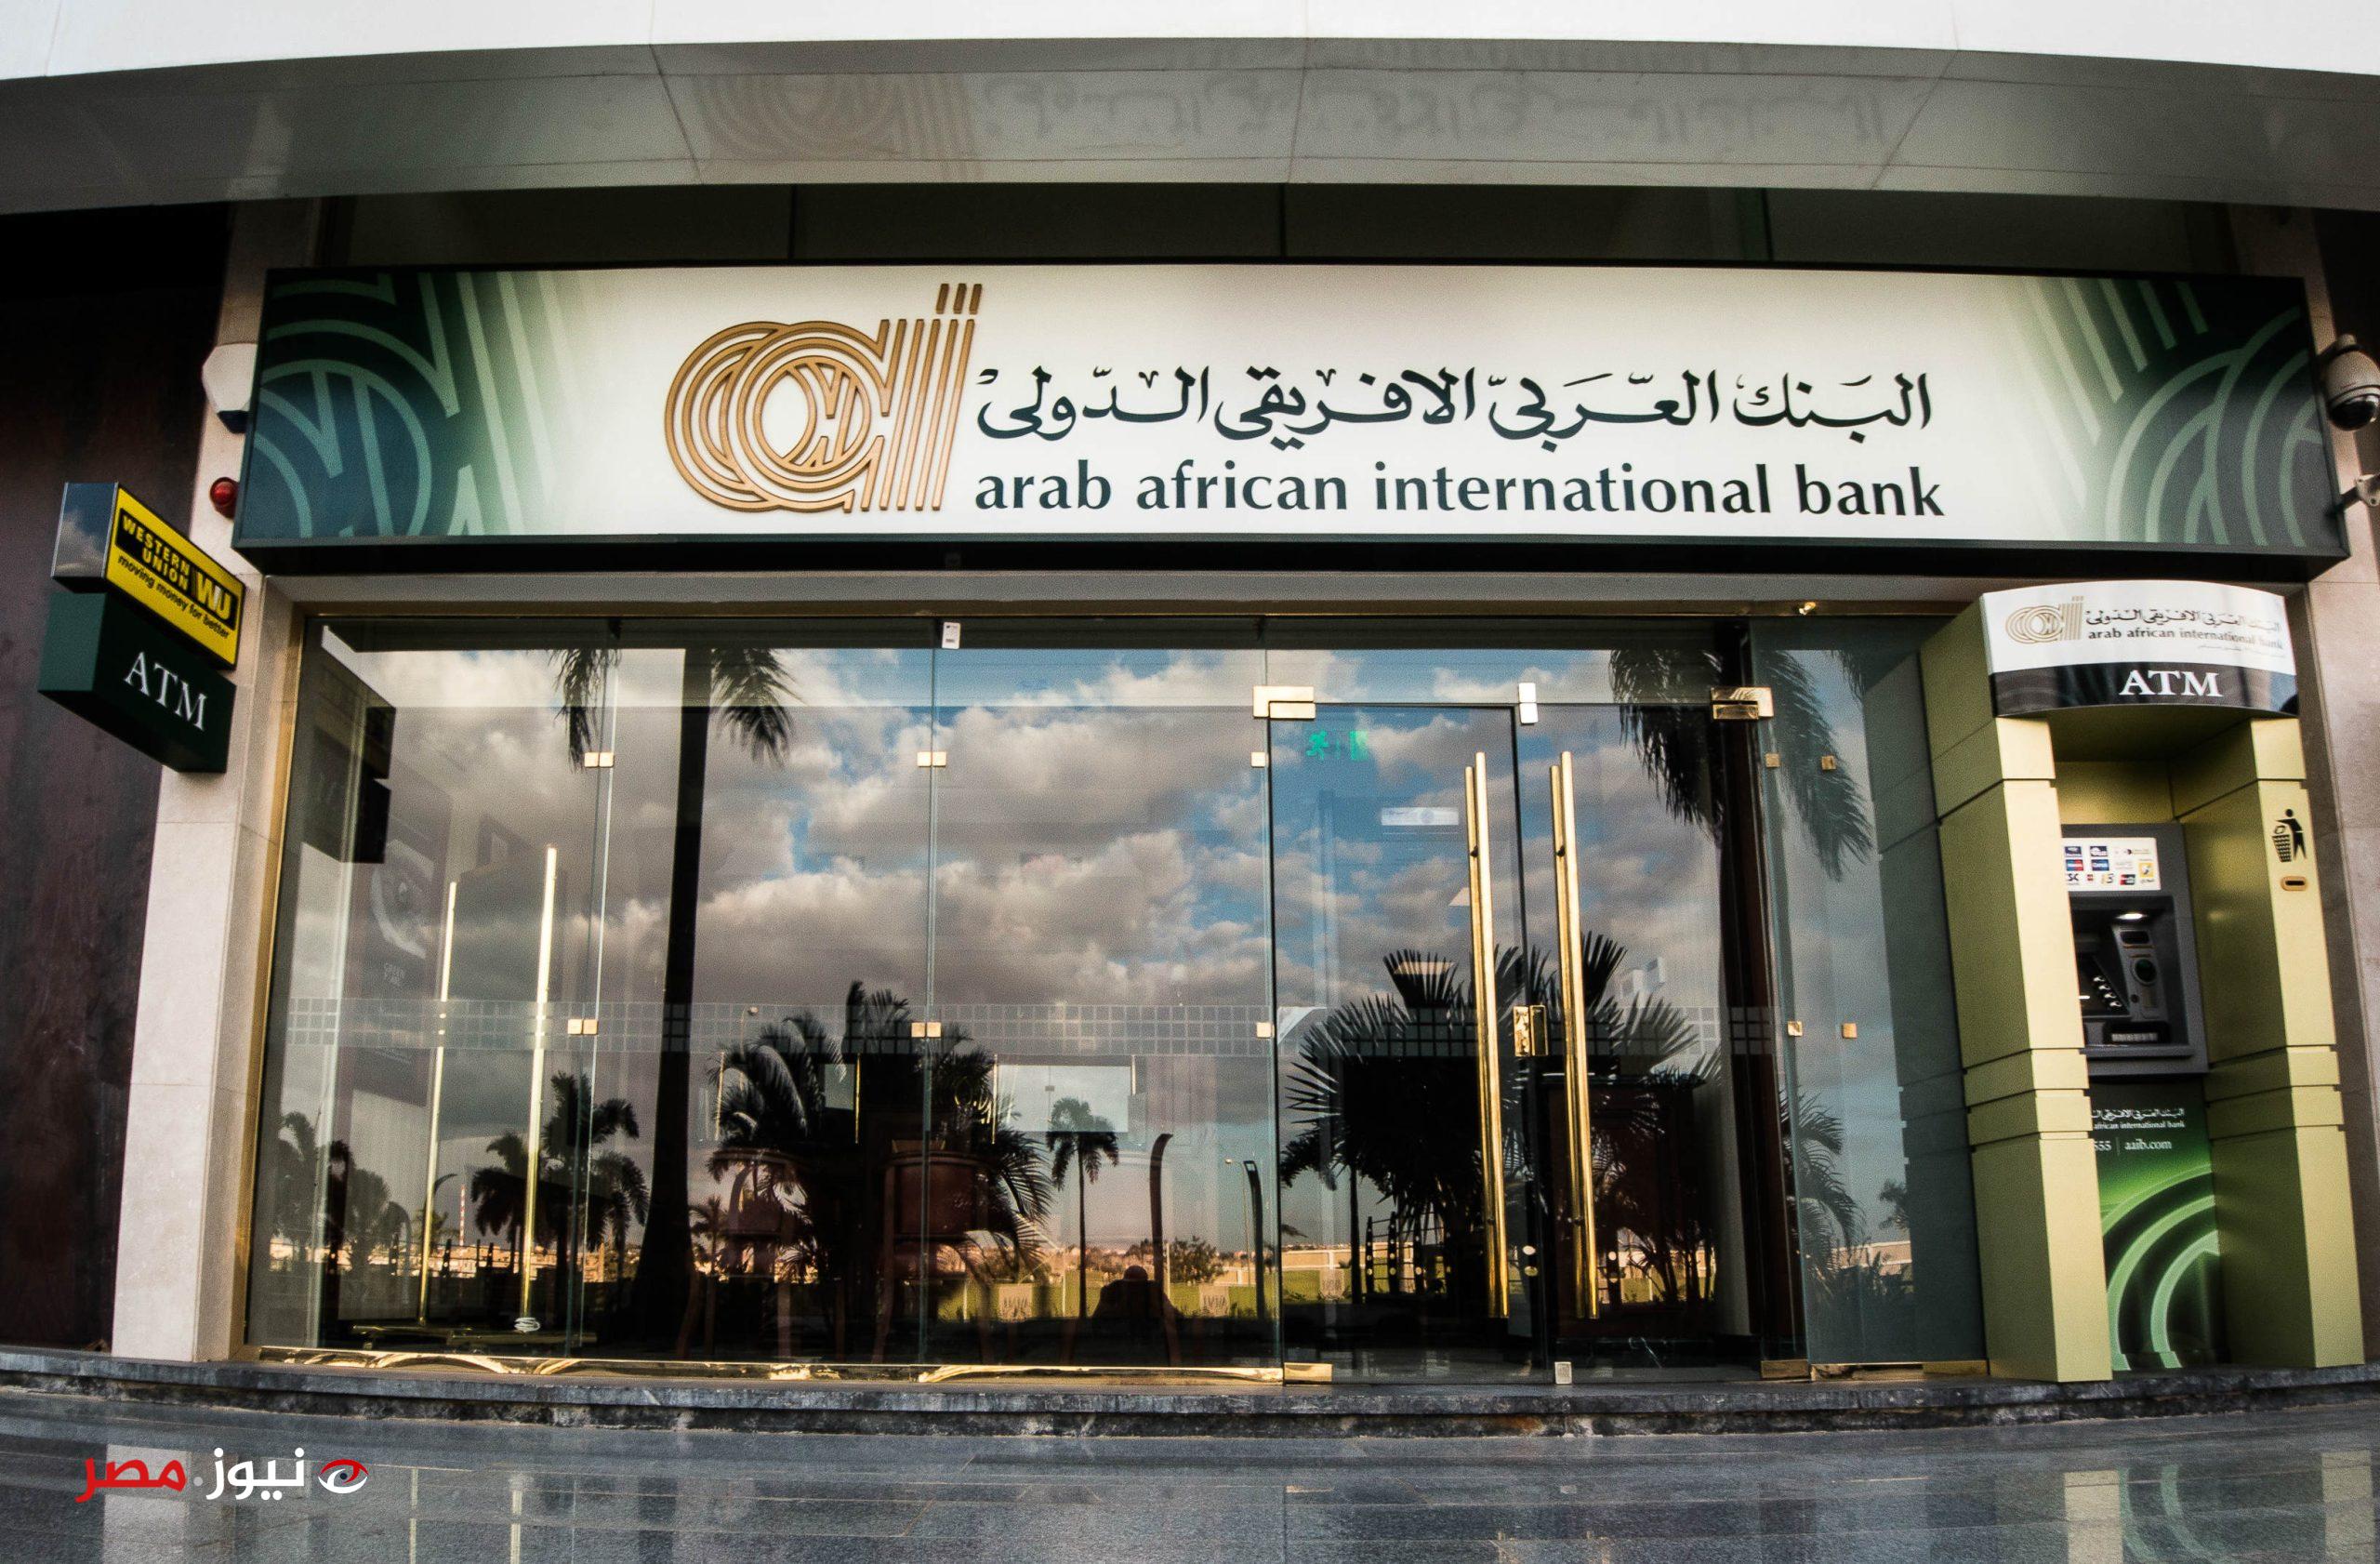 البنك العربي الأفريقي الدولي يطرح شهادة ادخار جديدة بعائد يومي